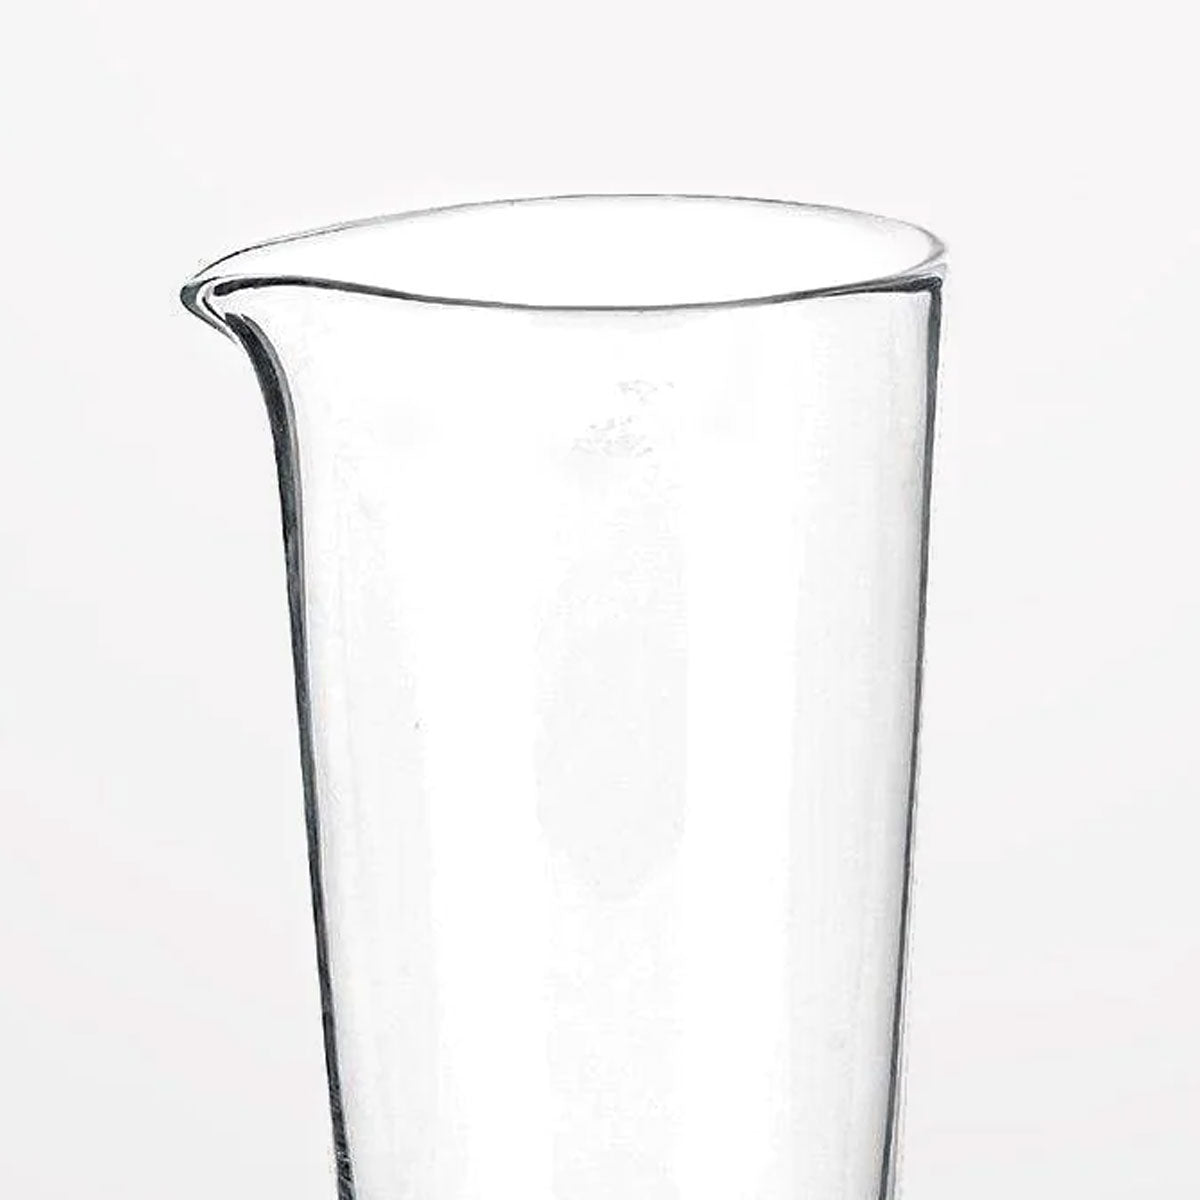 Schott Zwiesel Jug Handmade 0.75L Transparent Glass